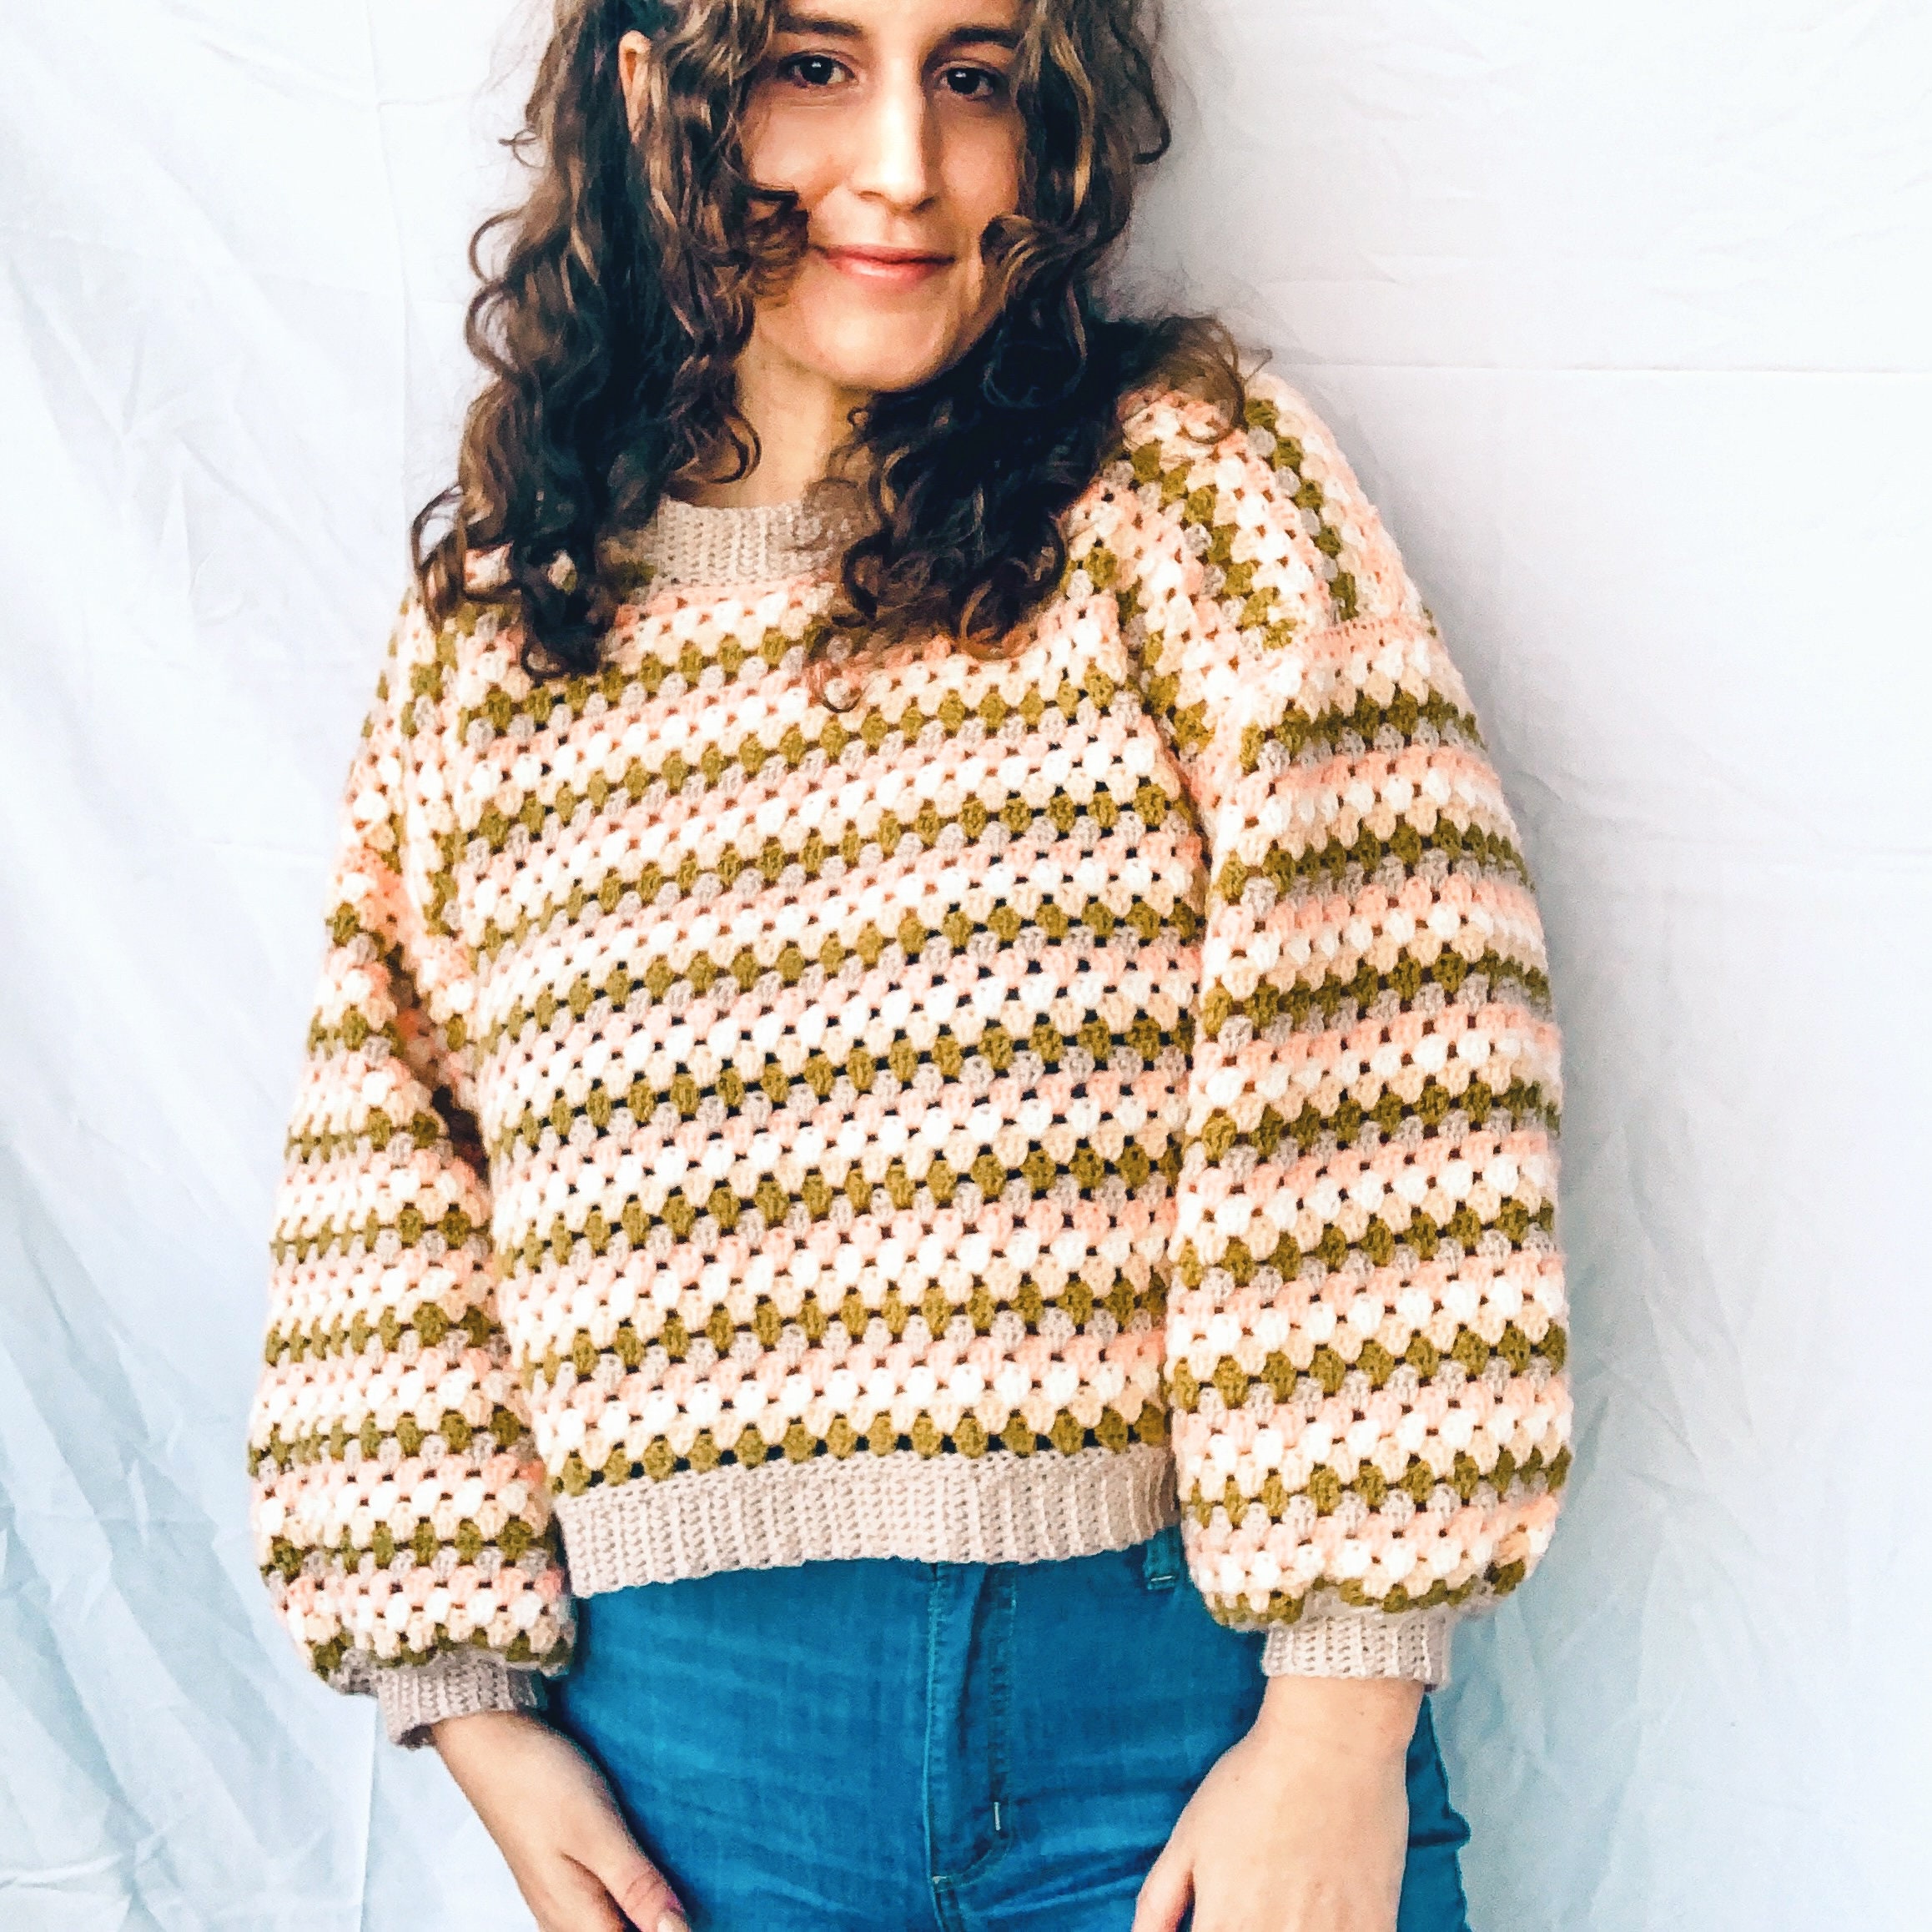 Gertie Jumper Crochet Pattern - Etsy Canada